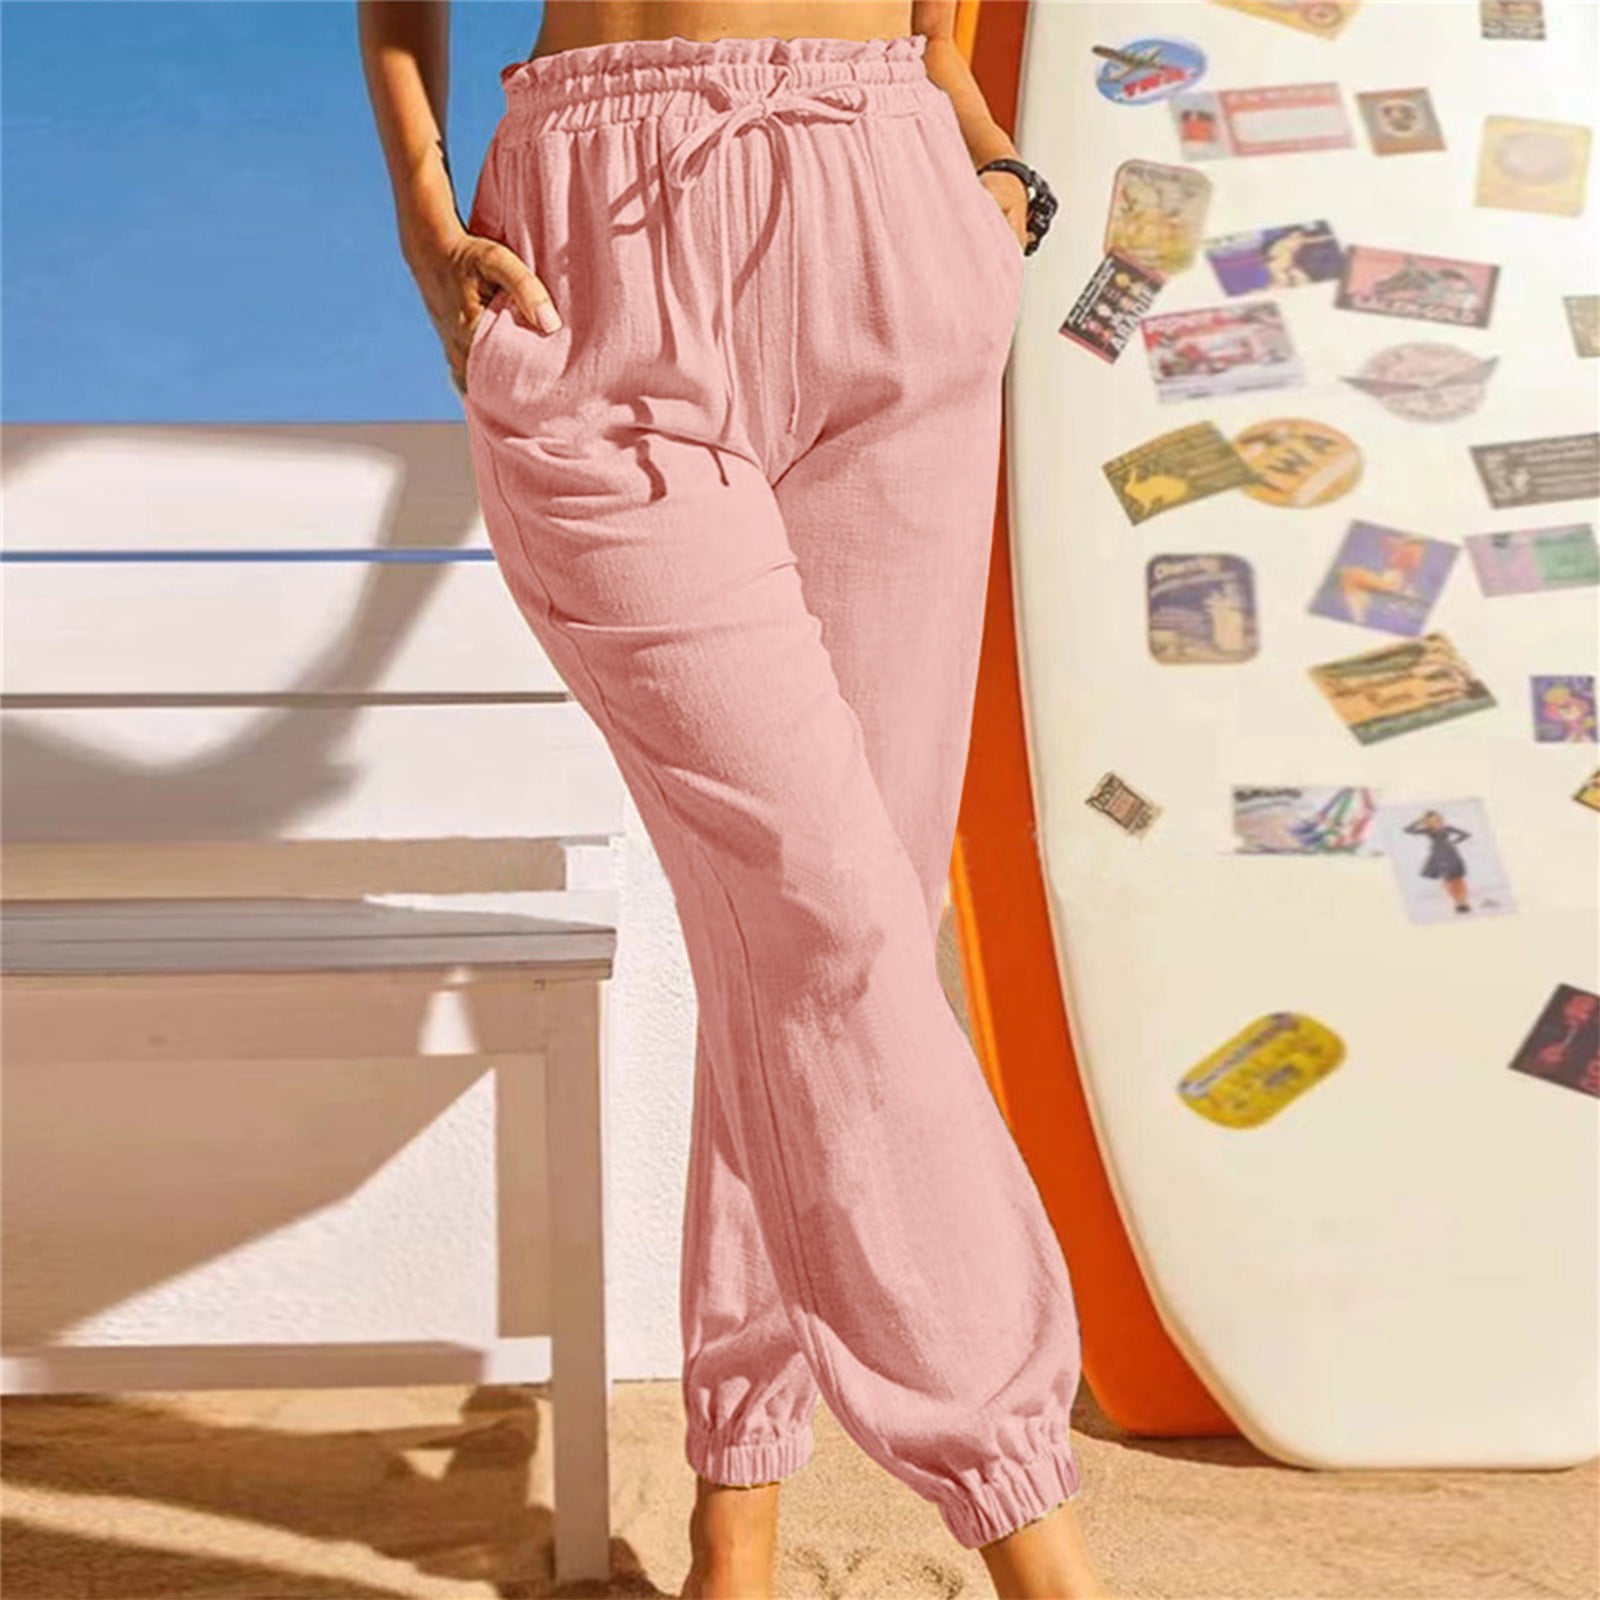 Zpanxa Women's Slacks Fashion Casual Solid Color Elastic Cotton And Linen Trousers  Pants Women's Sweatpants Work Pants 